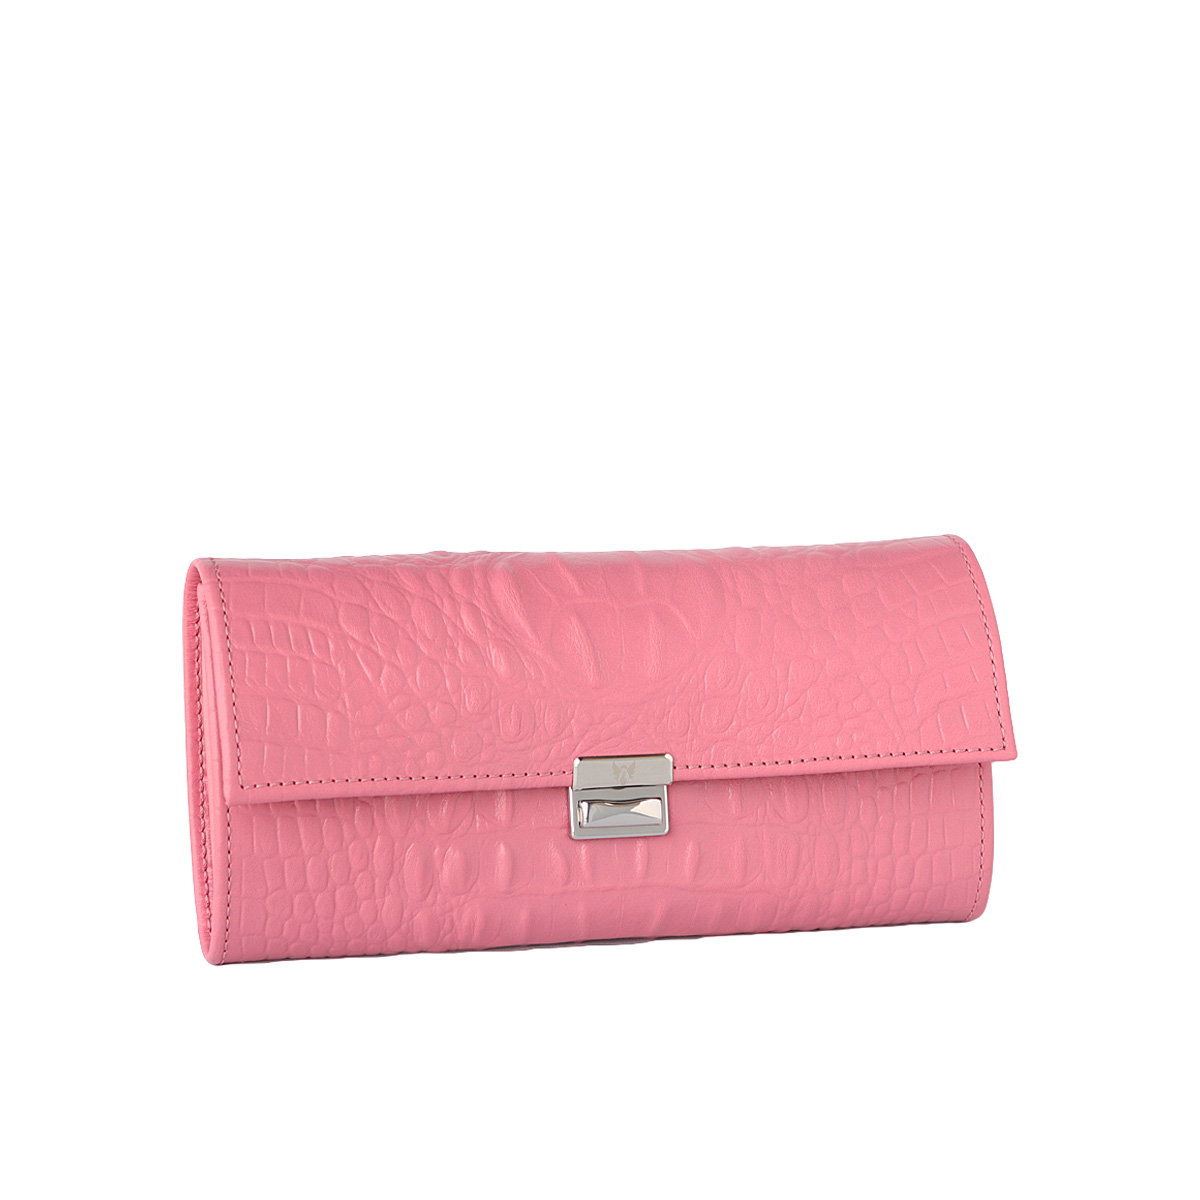 außergewöhnliche schöne damen portemonnaies kroko rosa